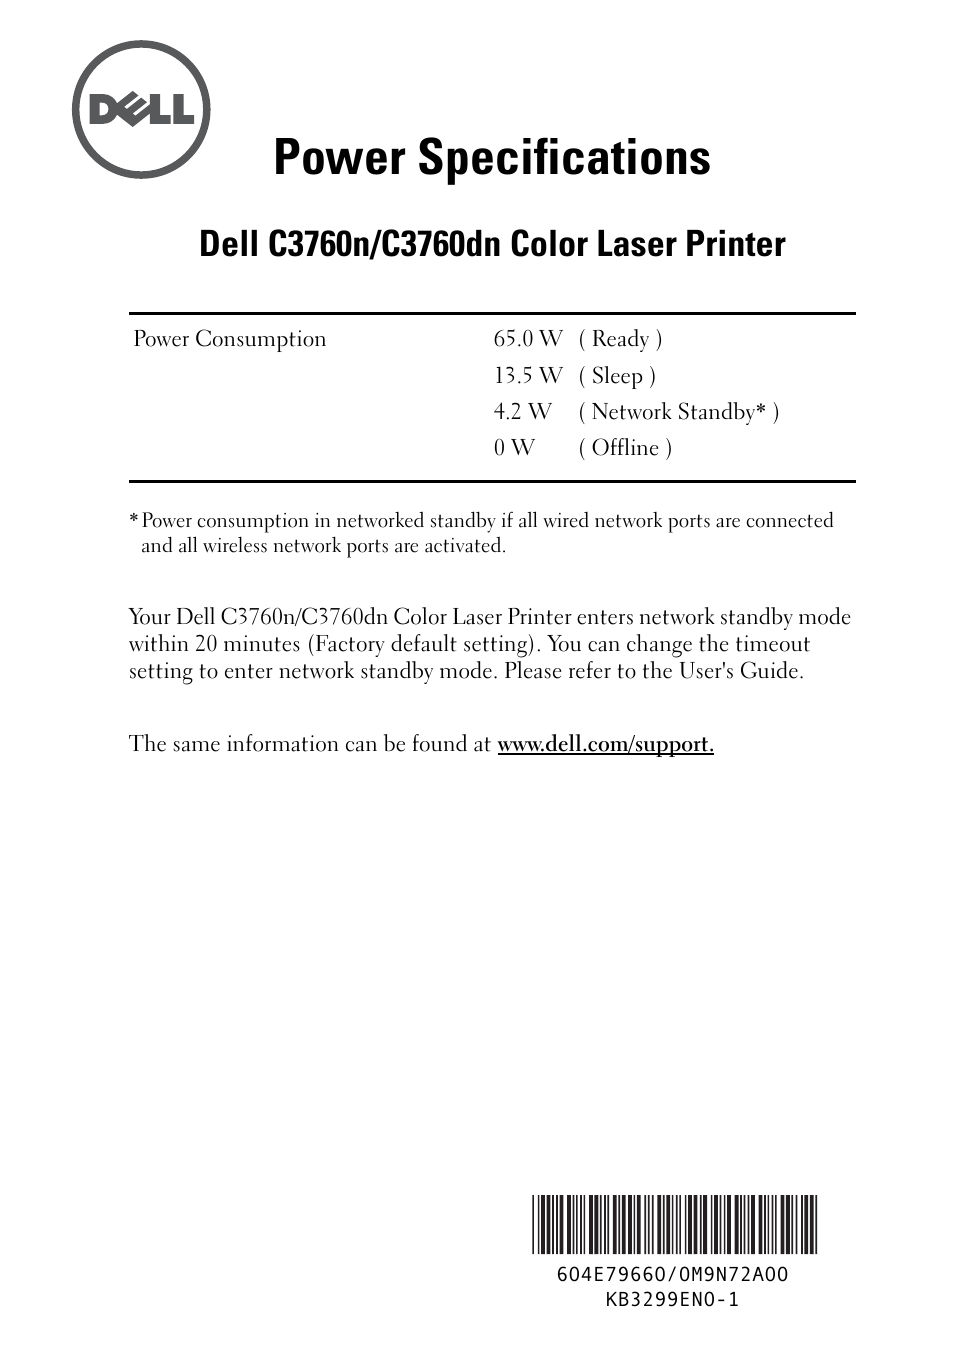 C3760dn Color Laser Printer